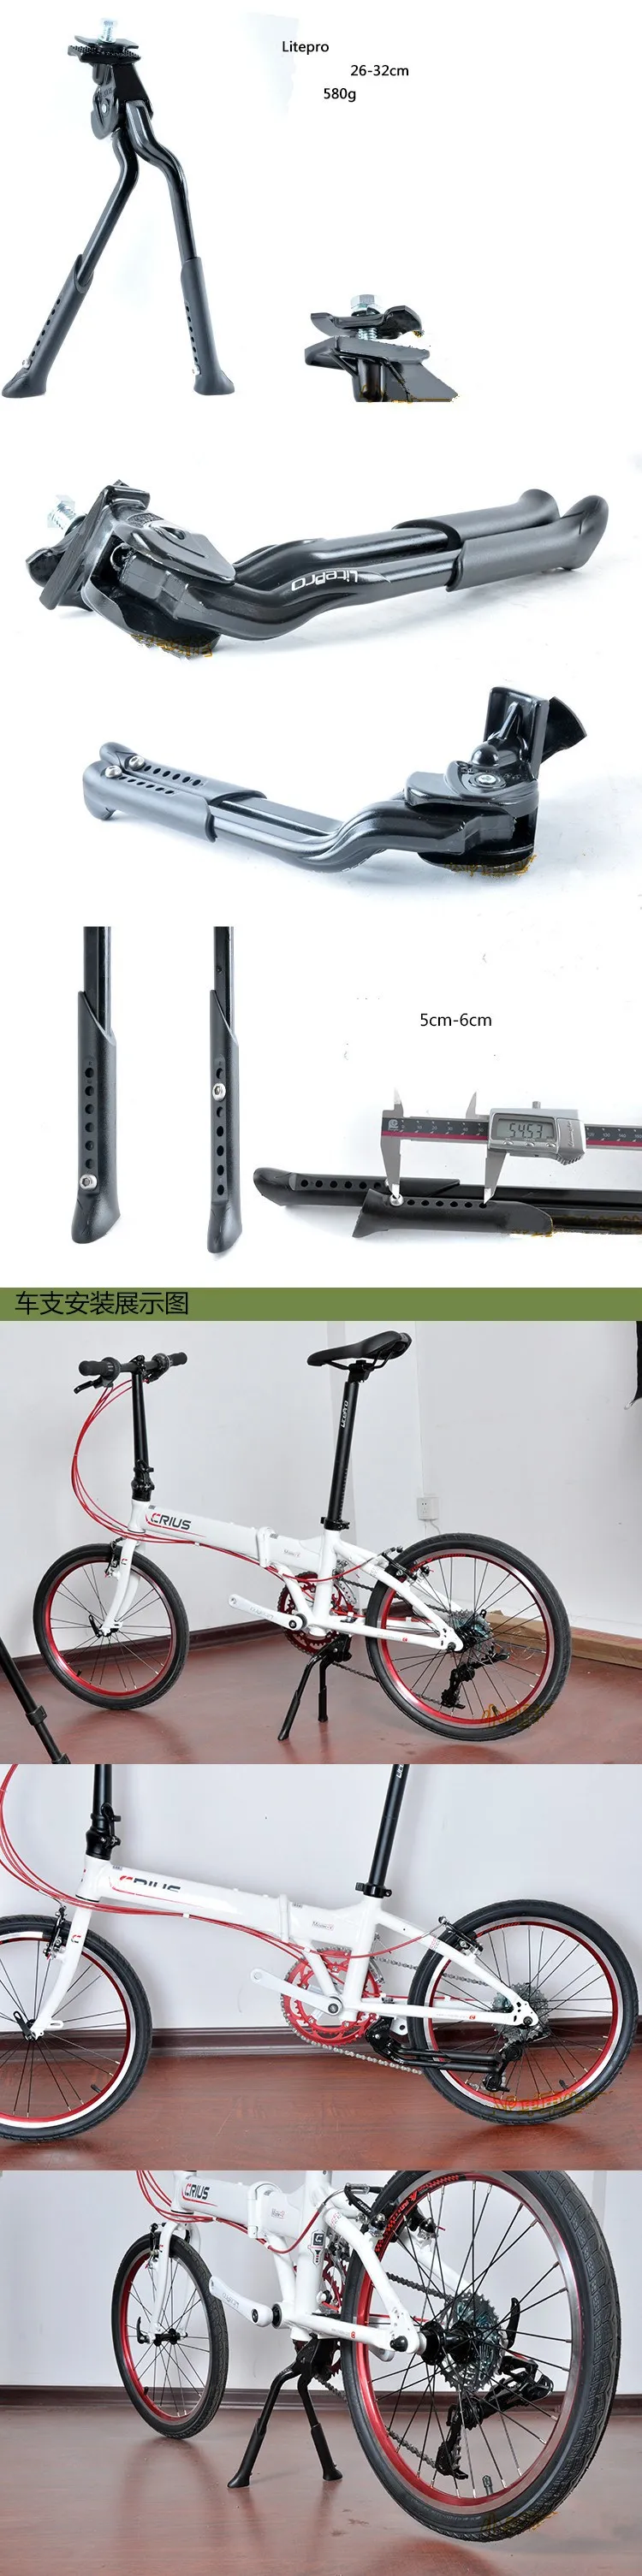 Litepro складной велосипед двойной стенд MTB дорожный велосипед стойки крепление подставки Регулировка ног остается